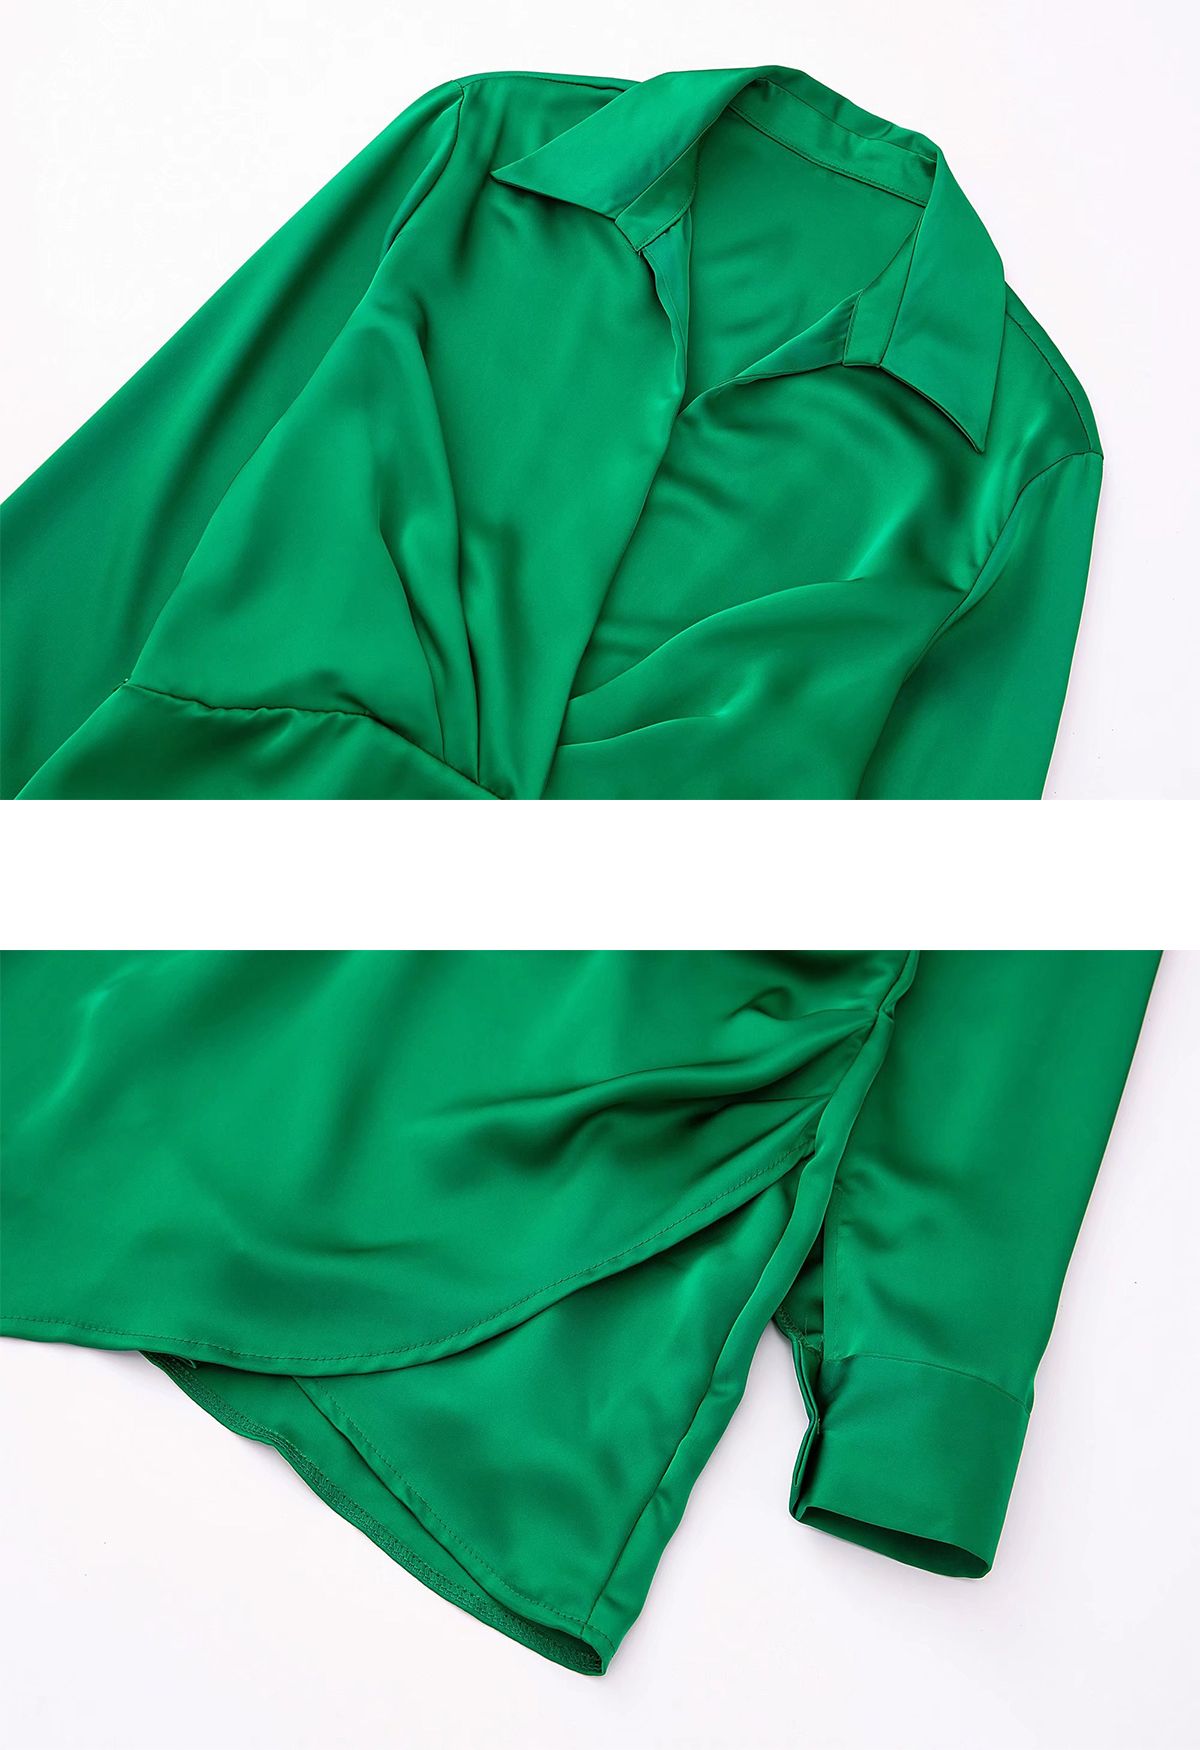 Vestido camisero de satén con escote en V y pliegues delanteros en verde